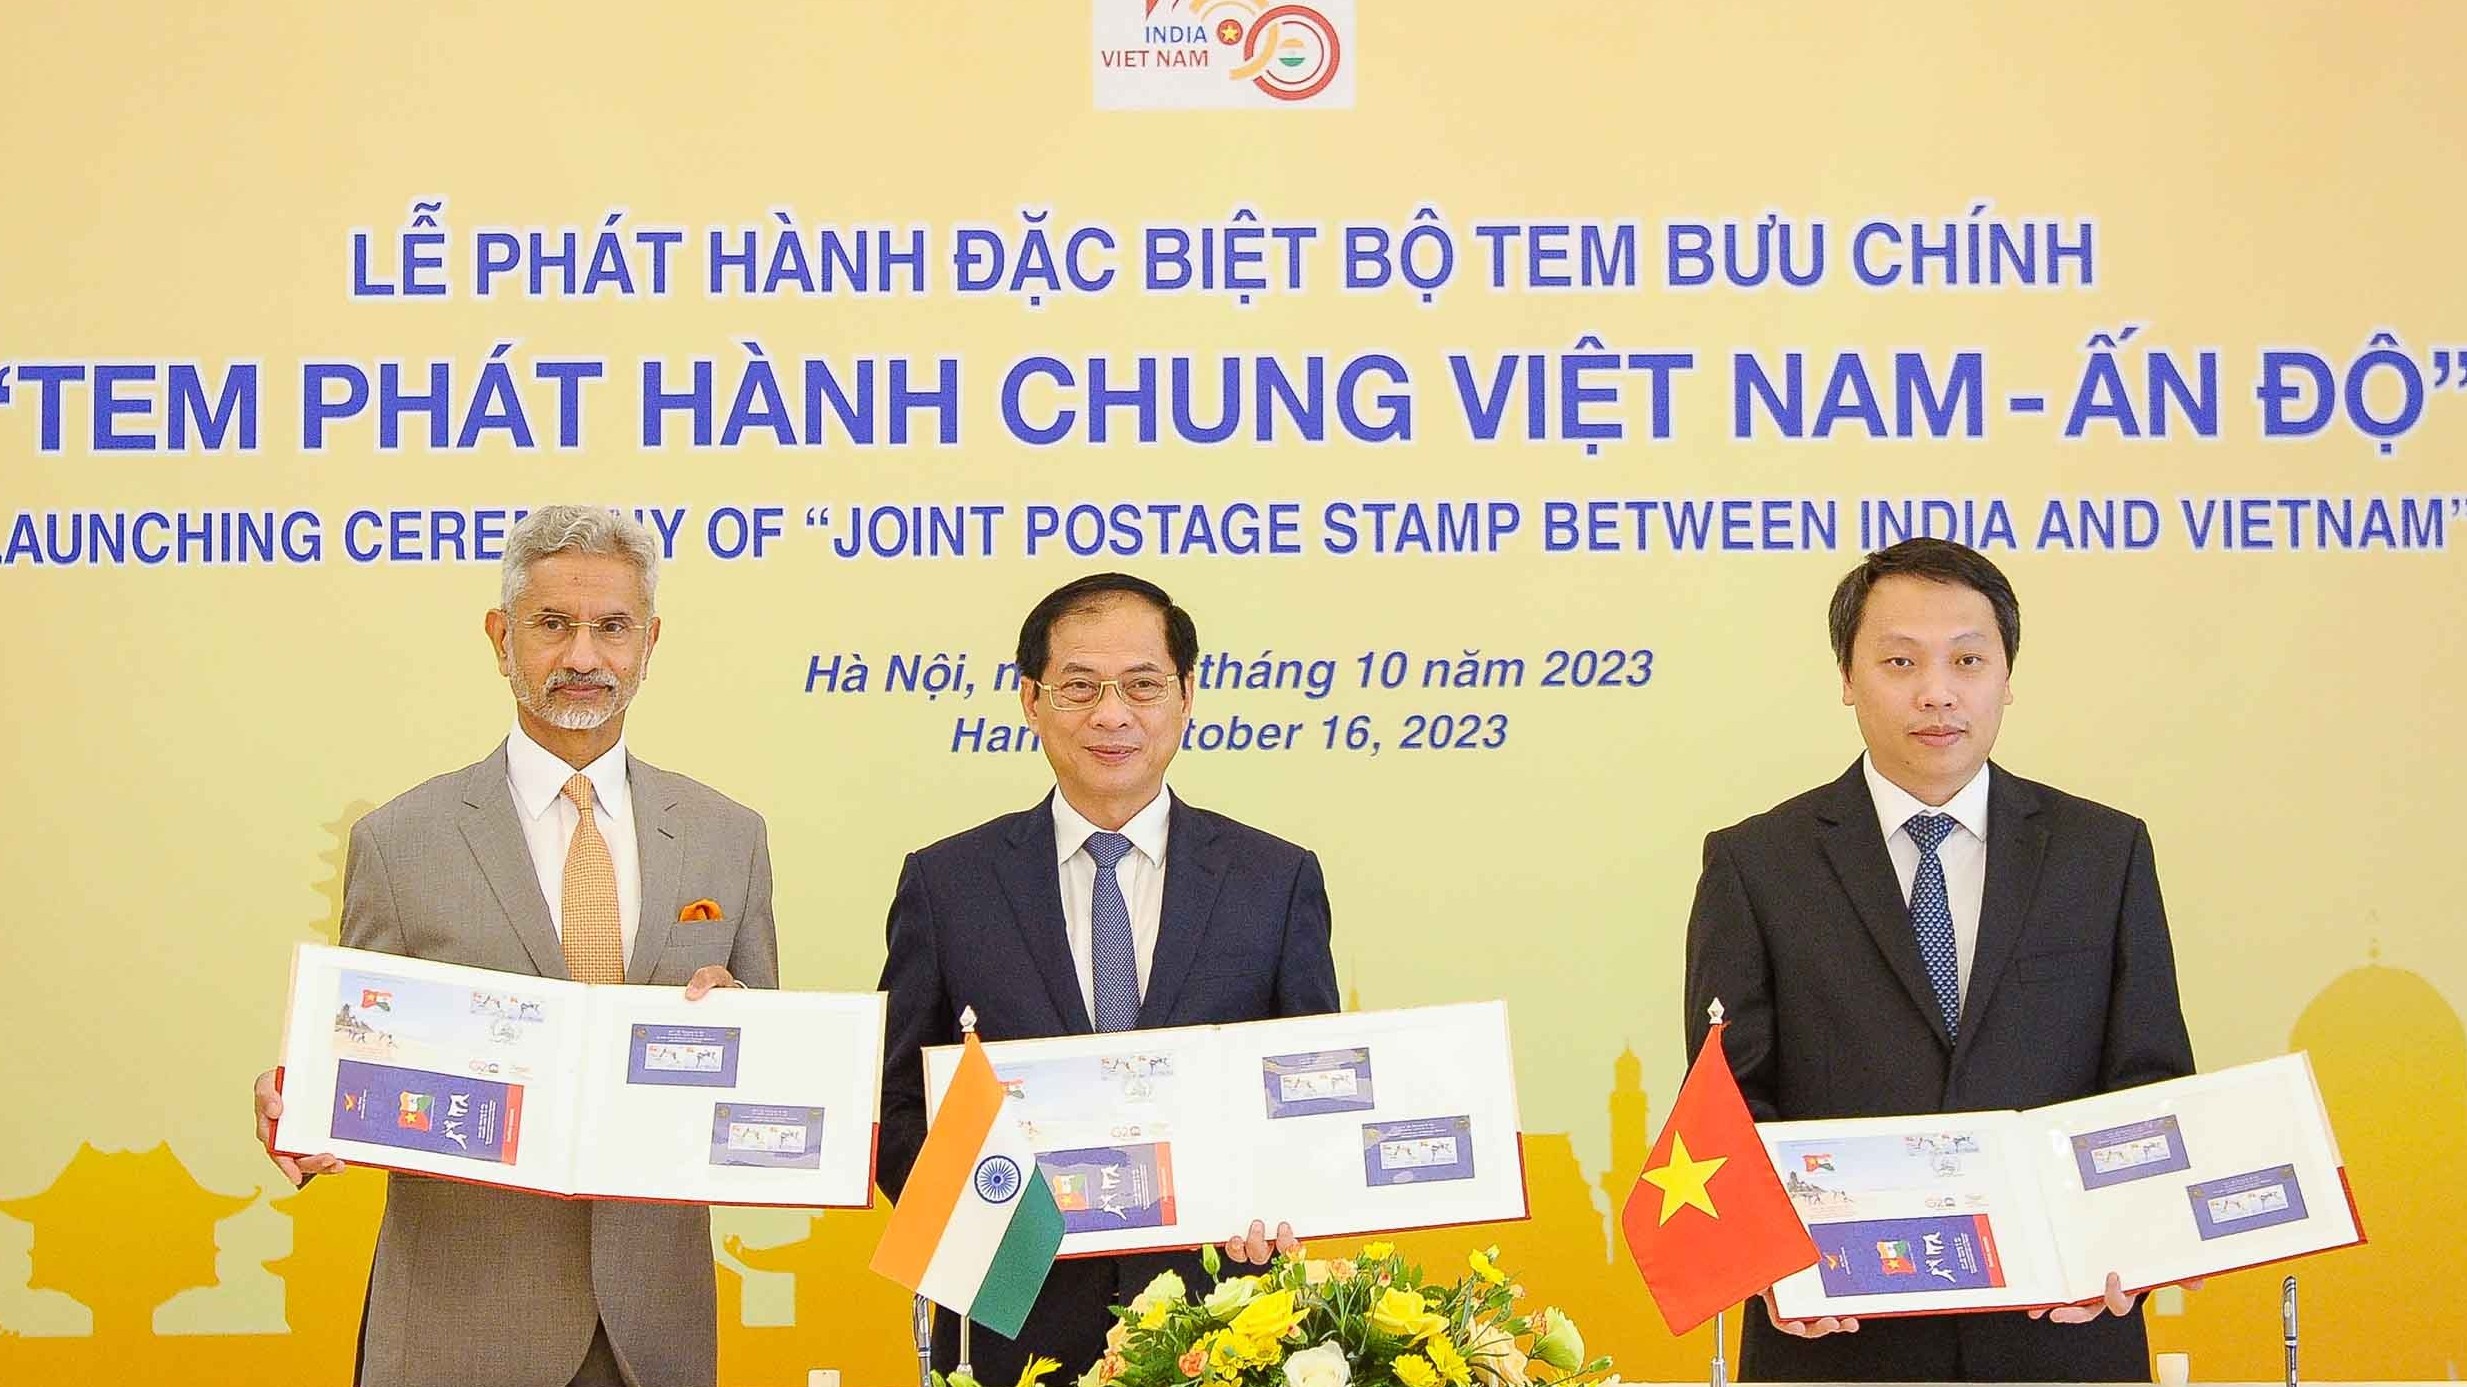 Hình ảnh môn võ dân tộc của Việt Nam-Ấn Độ trên tem chung hai nước